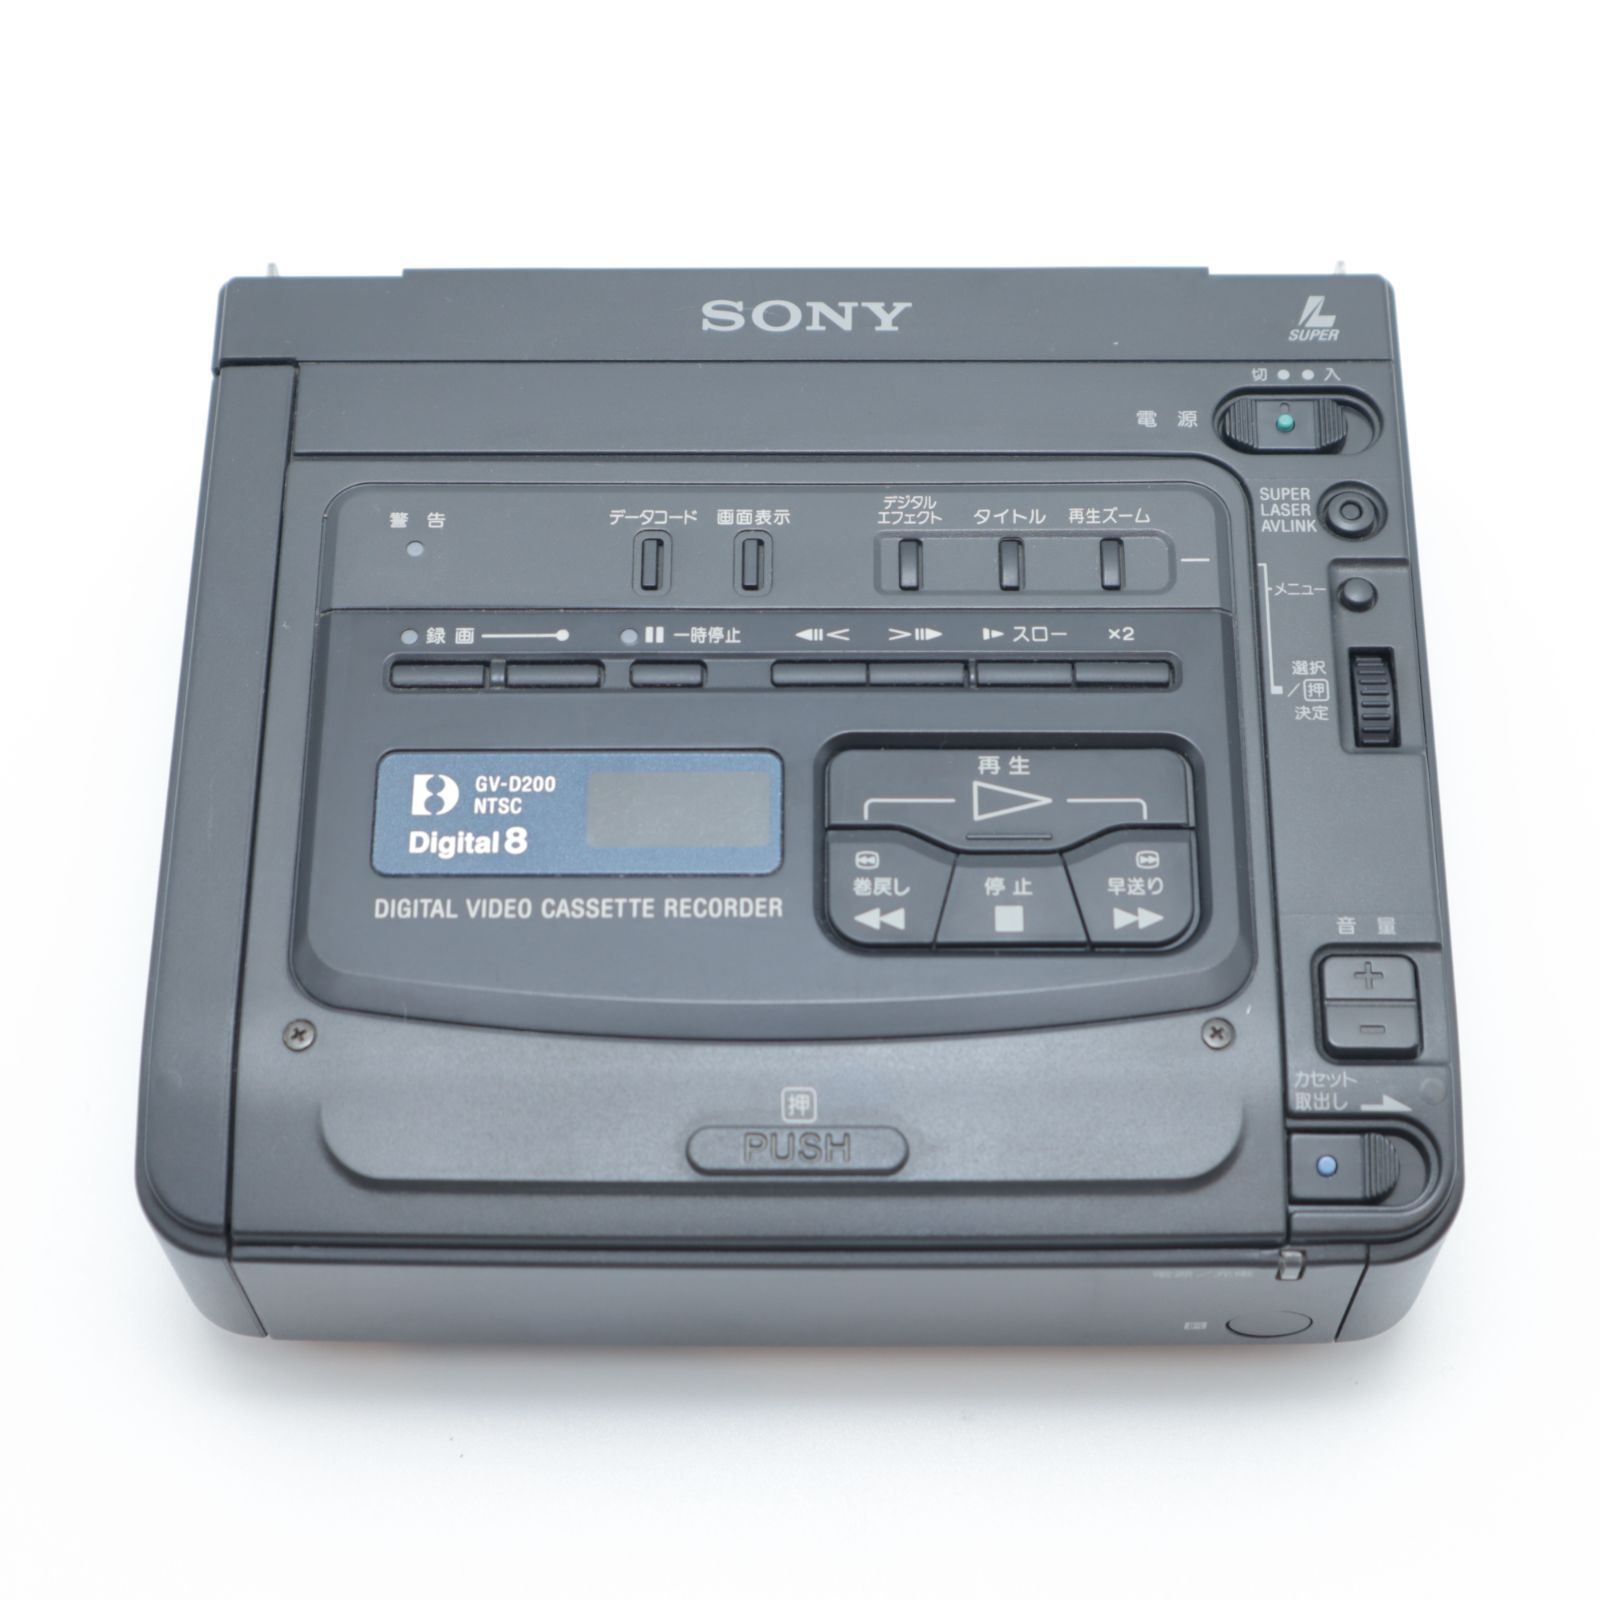 デジタルビデオカセットレコーダー SONY GV-D200